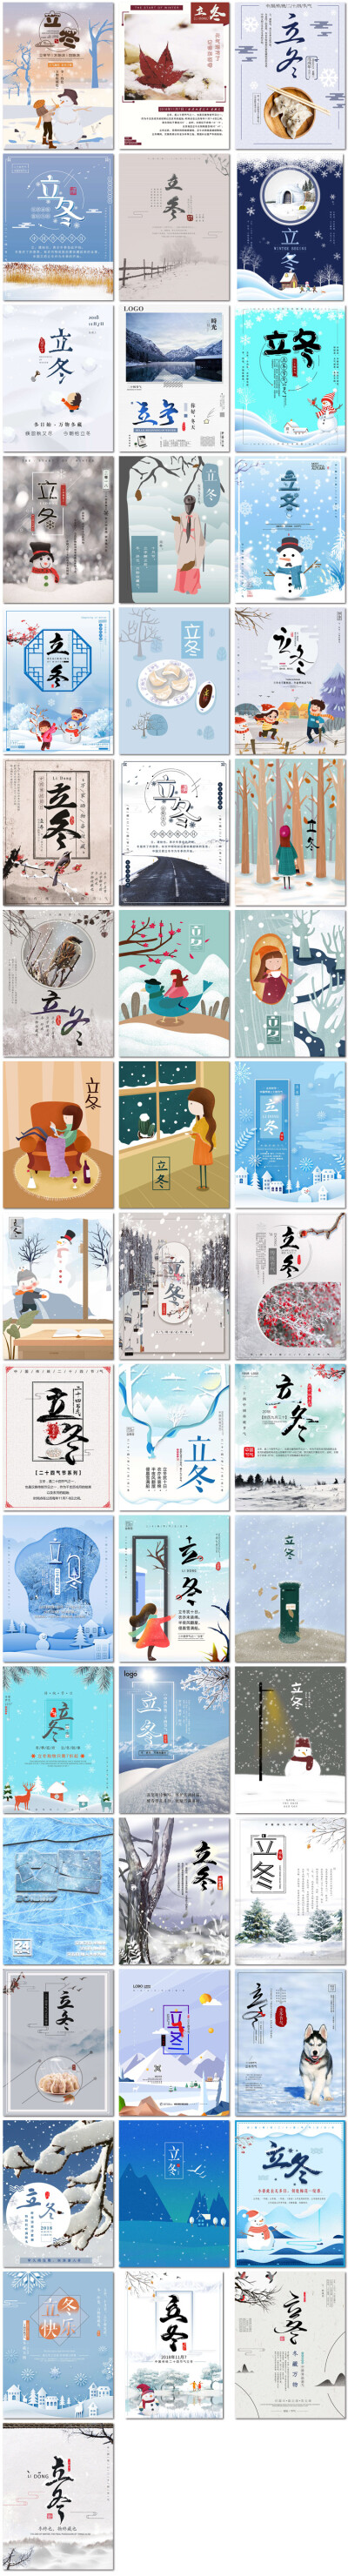 立冬24节气二十四节气11月秋季传统节日PSD插画海报素材模版设计